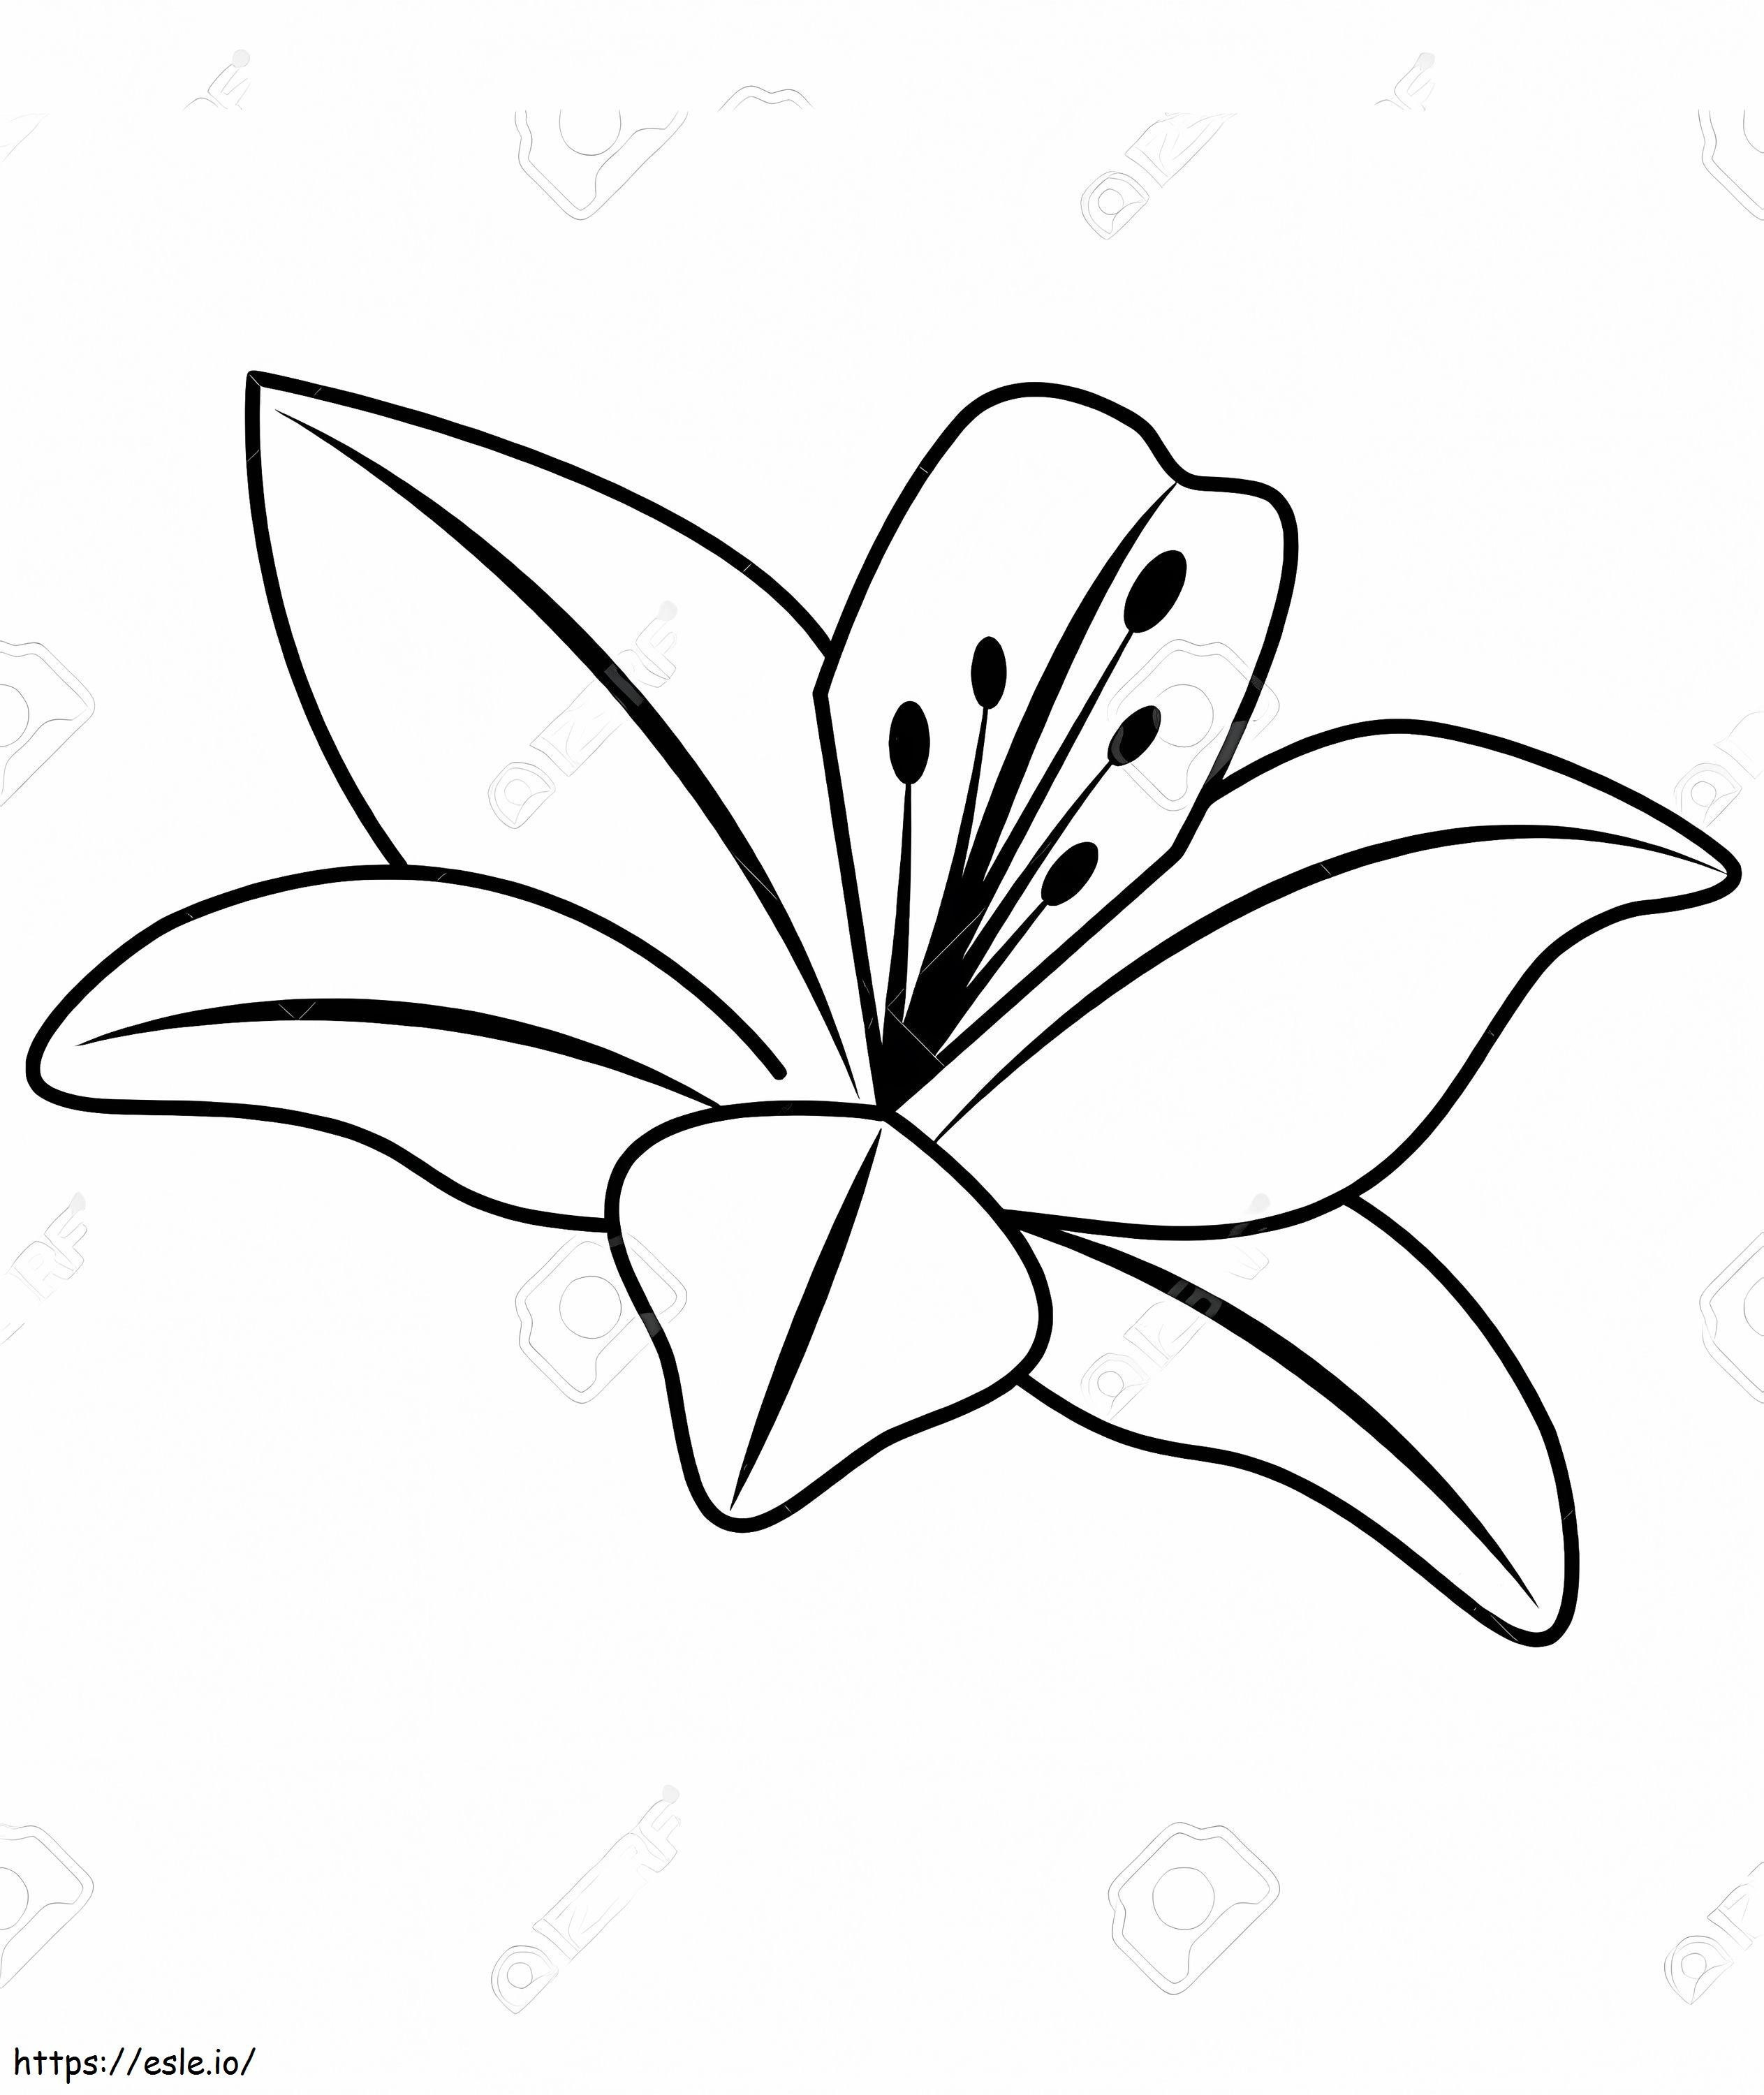 Coloriage Fleur de Lys 2 à imprimer dessin